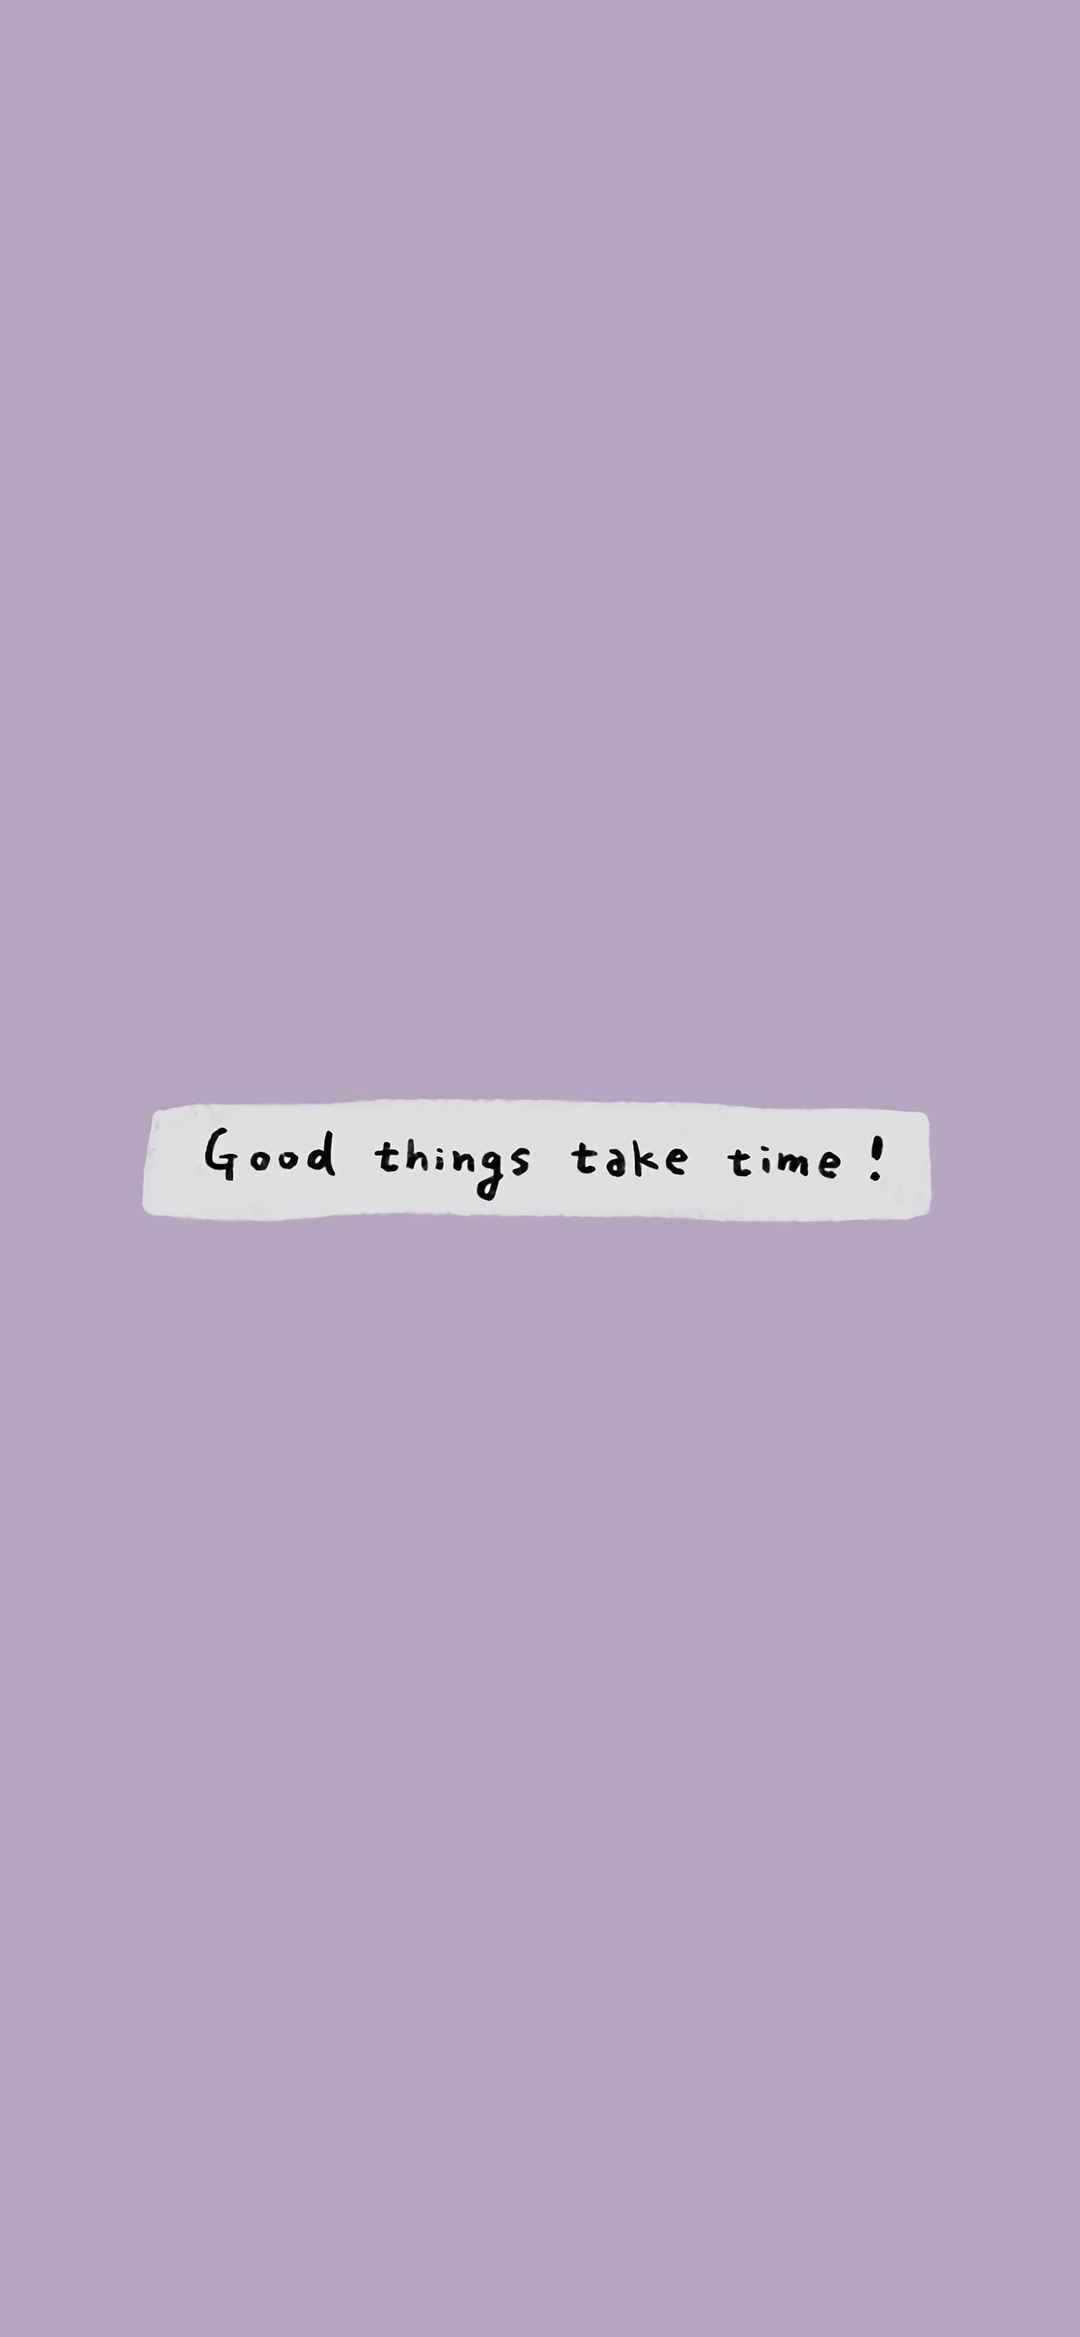 good things take time!-